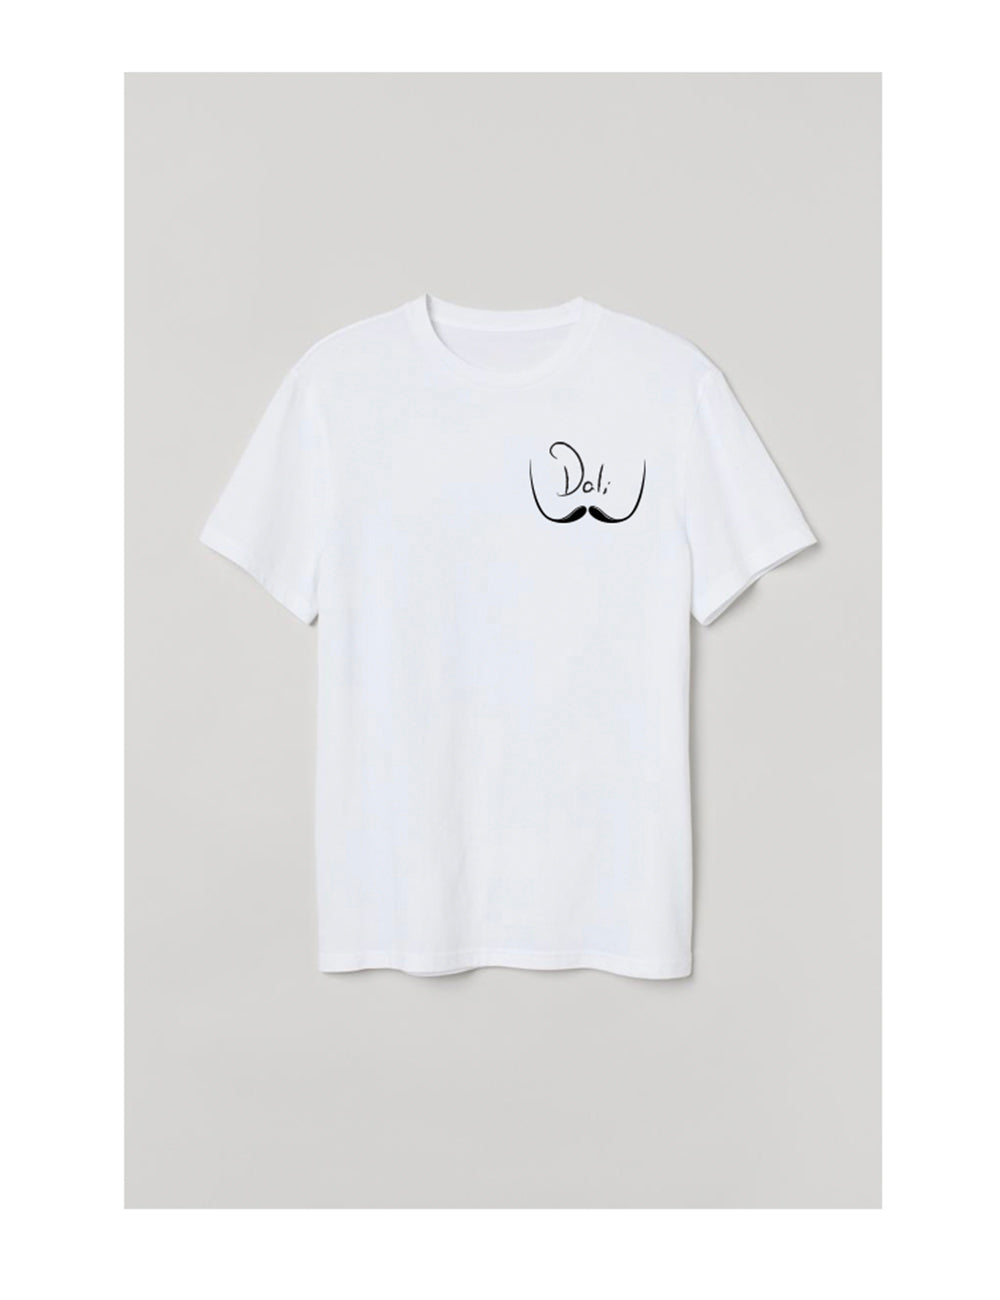 Famous Moustaches - La Dali - T-shirt Unisexe